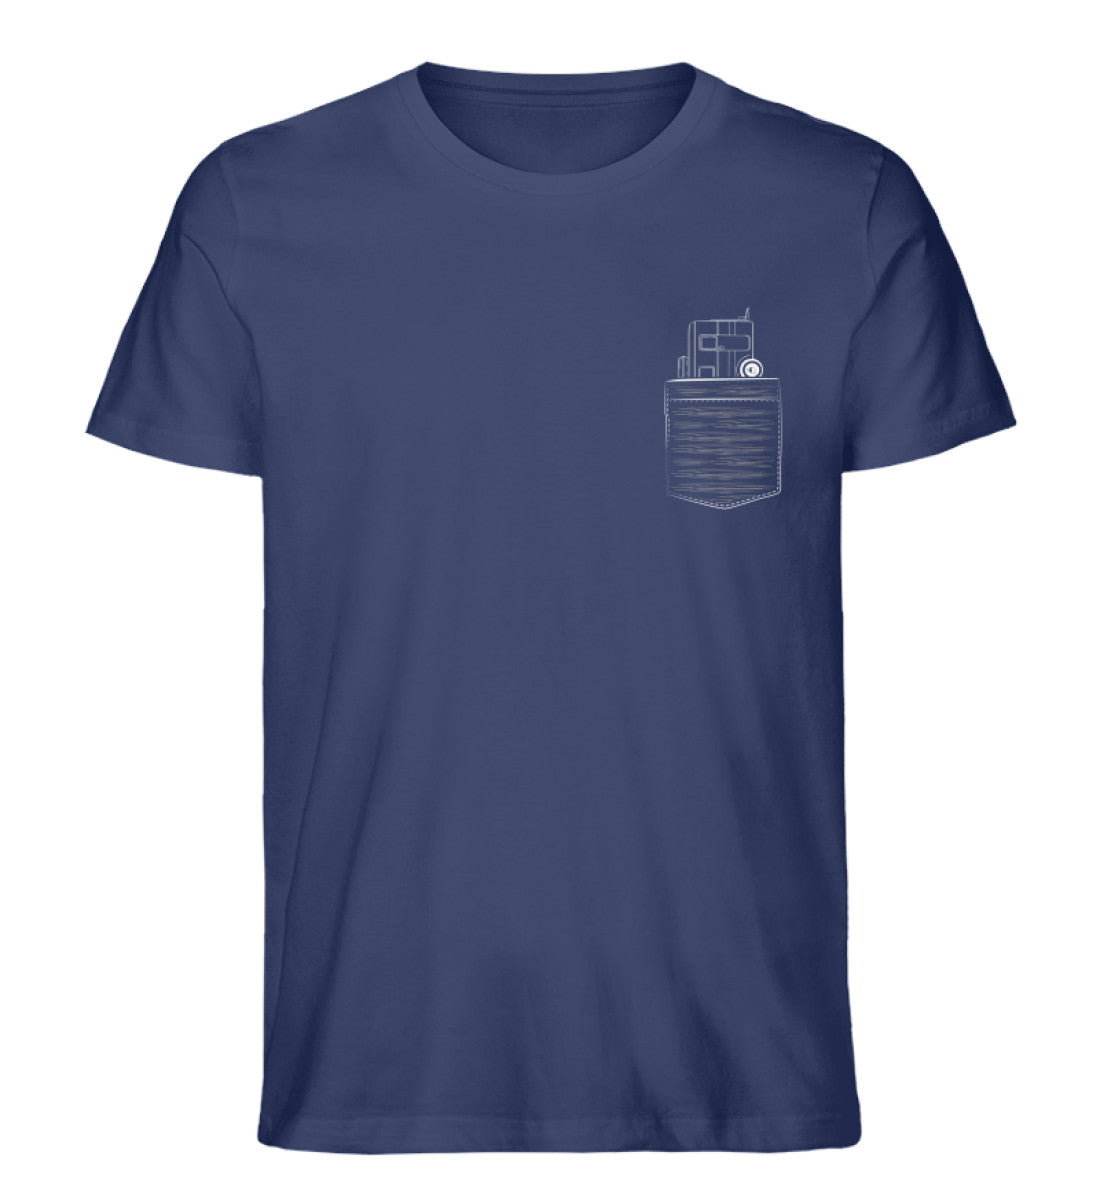 Camper in Brusttasche - Herren Organic T-Shirt camping Navyblau